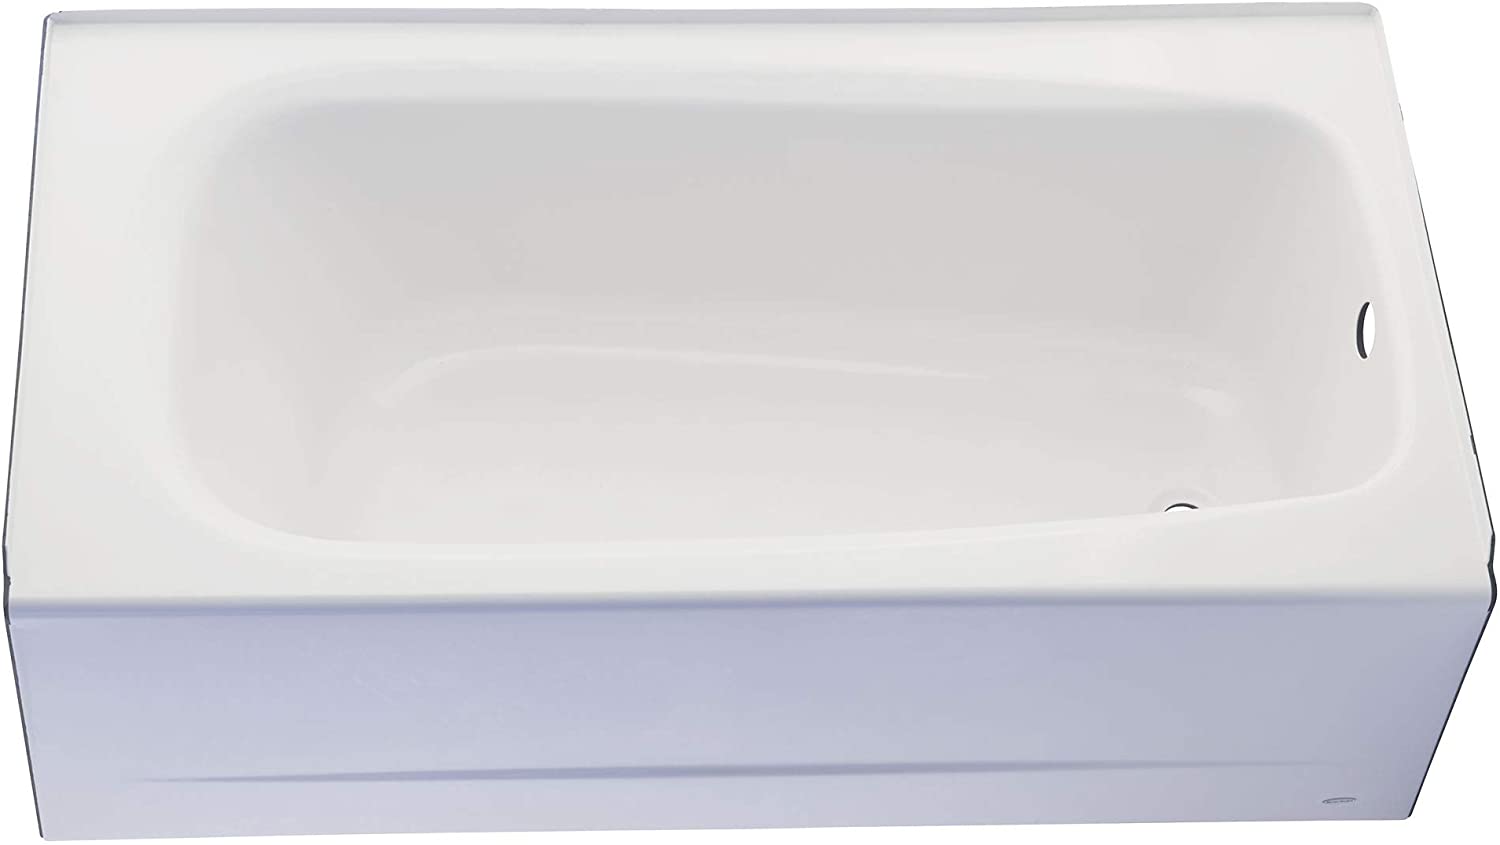 American Standard 2460002.020 Cambridge Left-Hand Drain Alcove Bathtub, 60-Inch